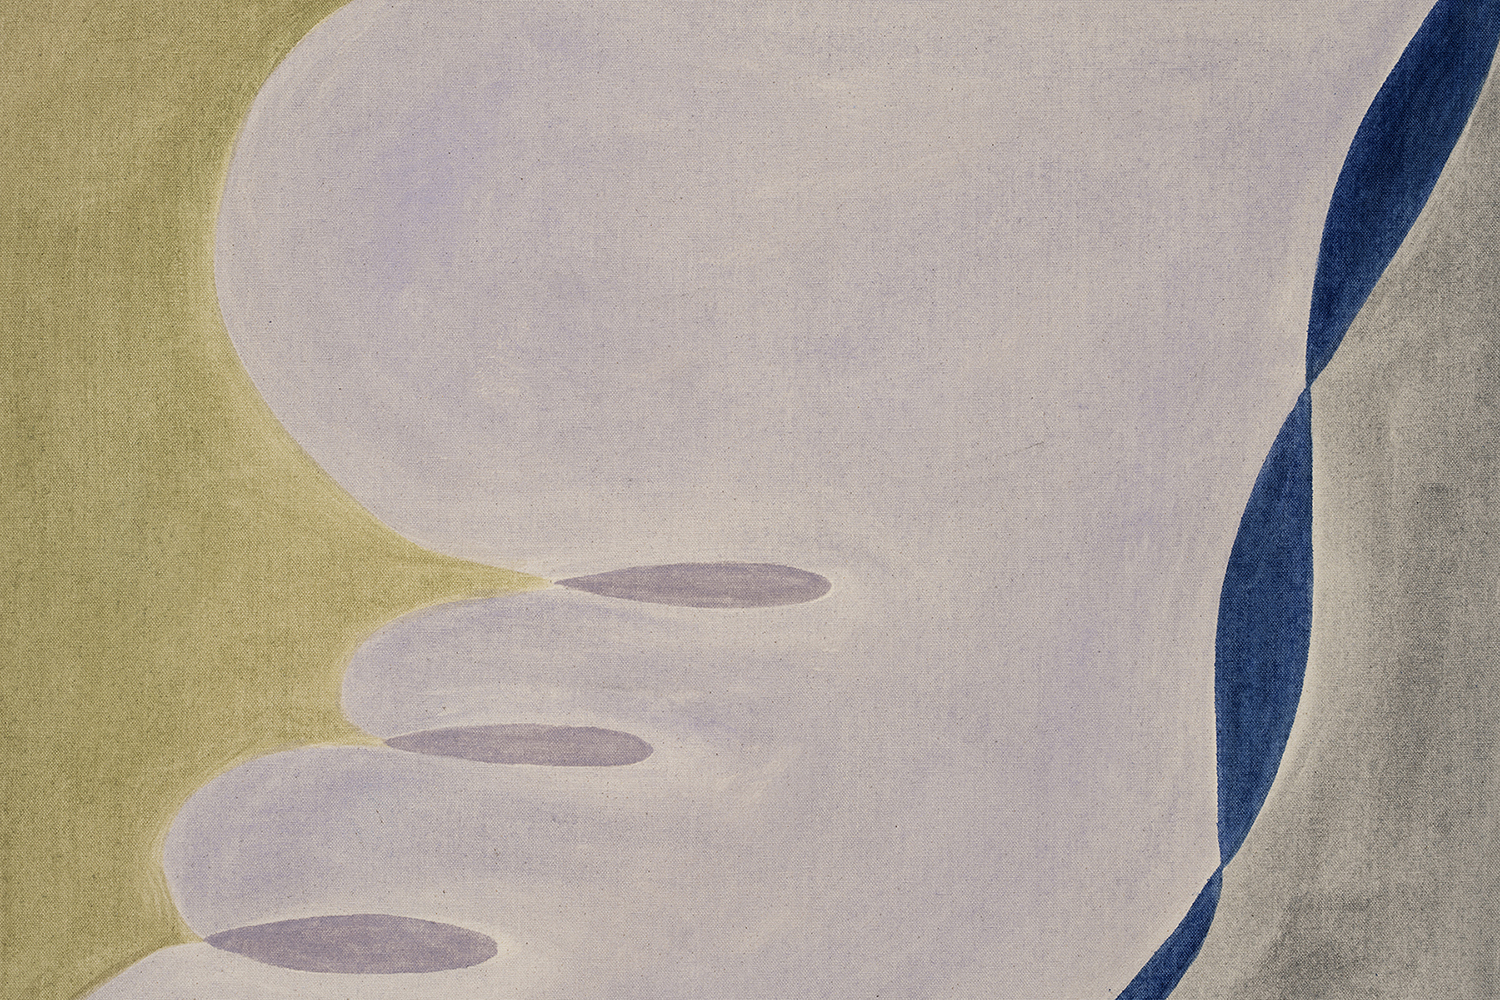 Vinna Begin, "Birdsong" (detail), 2024 (Pigment on canvas, triptych, 91,5 x 228 cm).